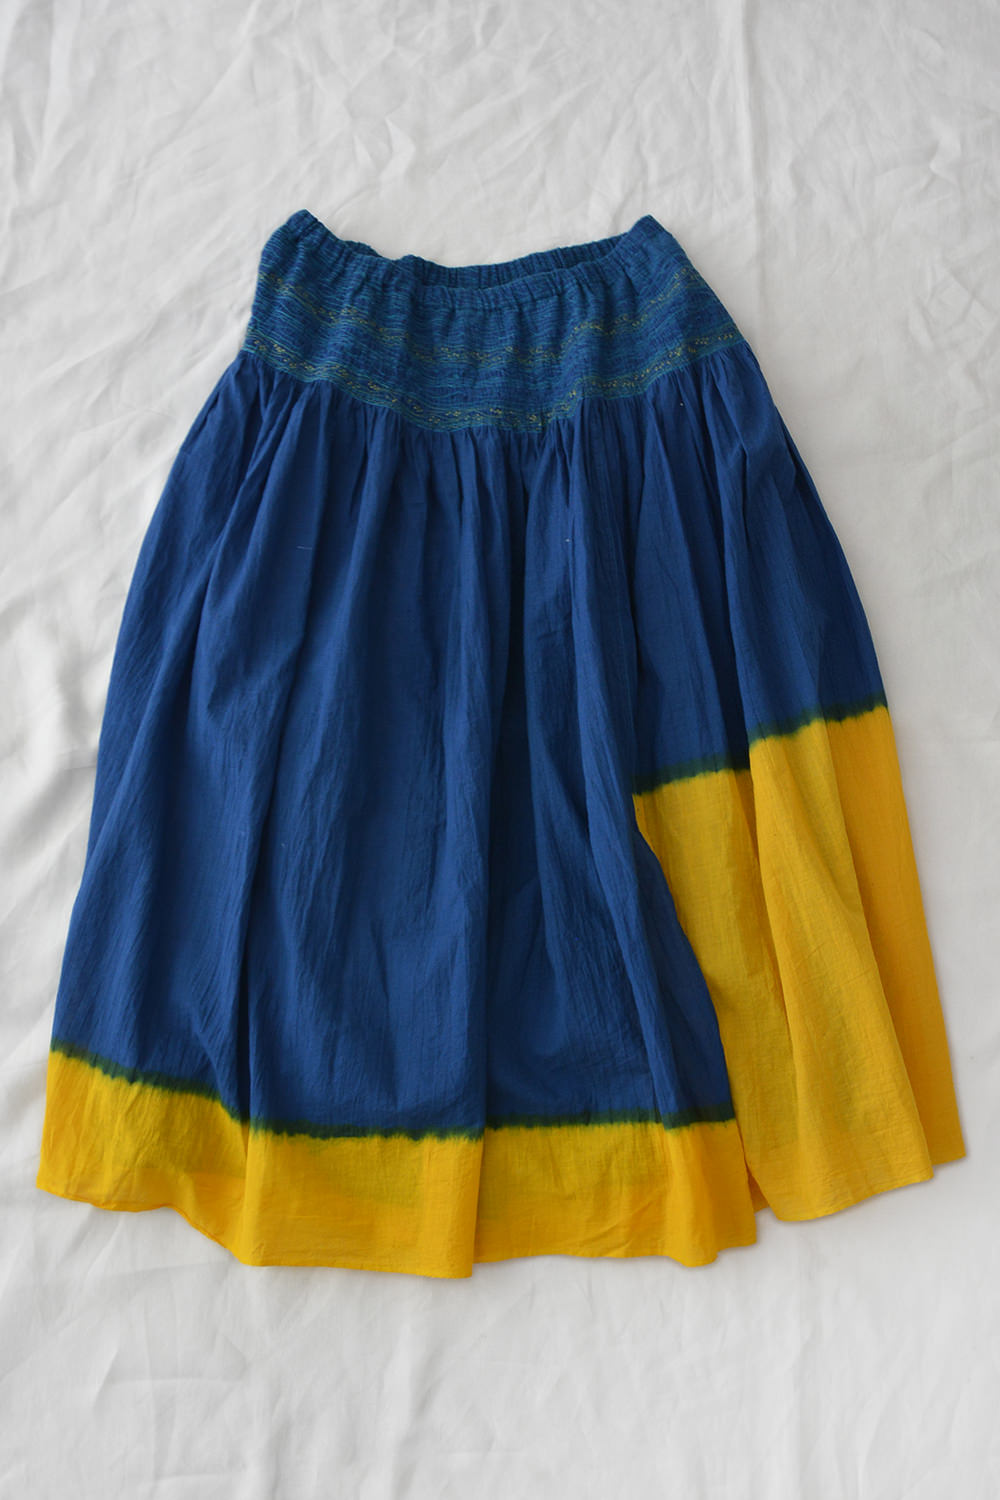 Injiri Two Tone Silk Cotton Skirt - Indigo x Yellow - Makie. Main.